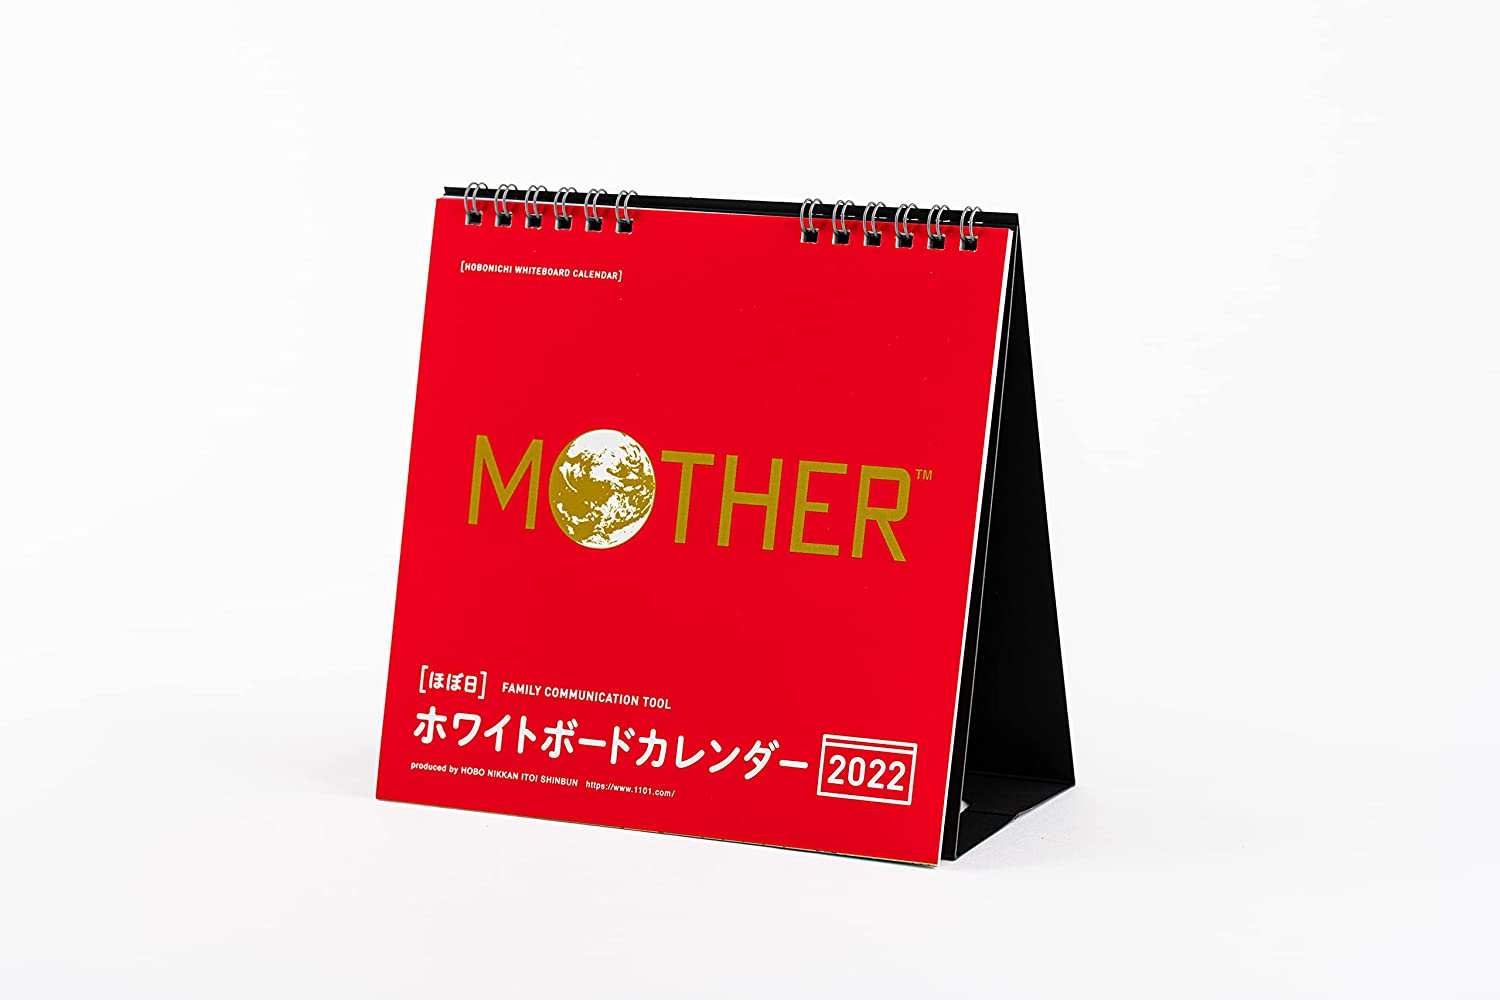 『MOTHER』のビジュアルがたのしめる、おしゃれな卓上カレンダー2022年版